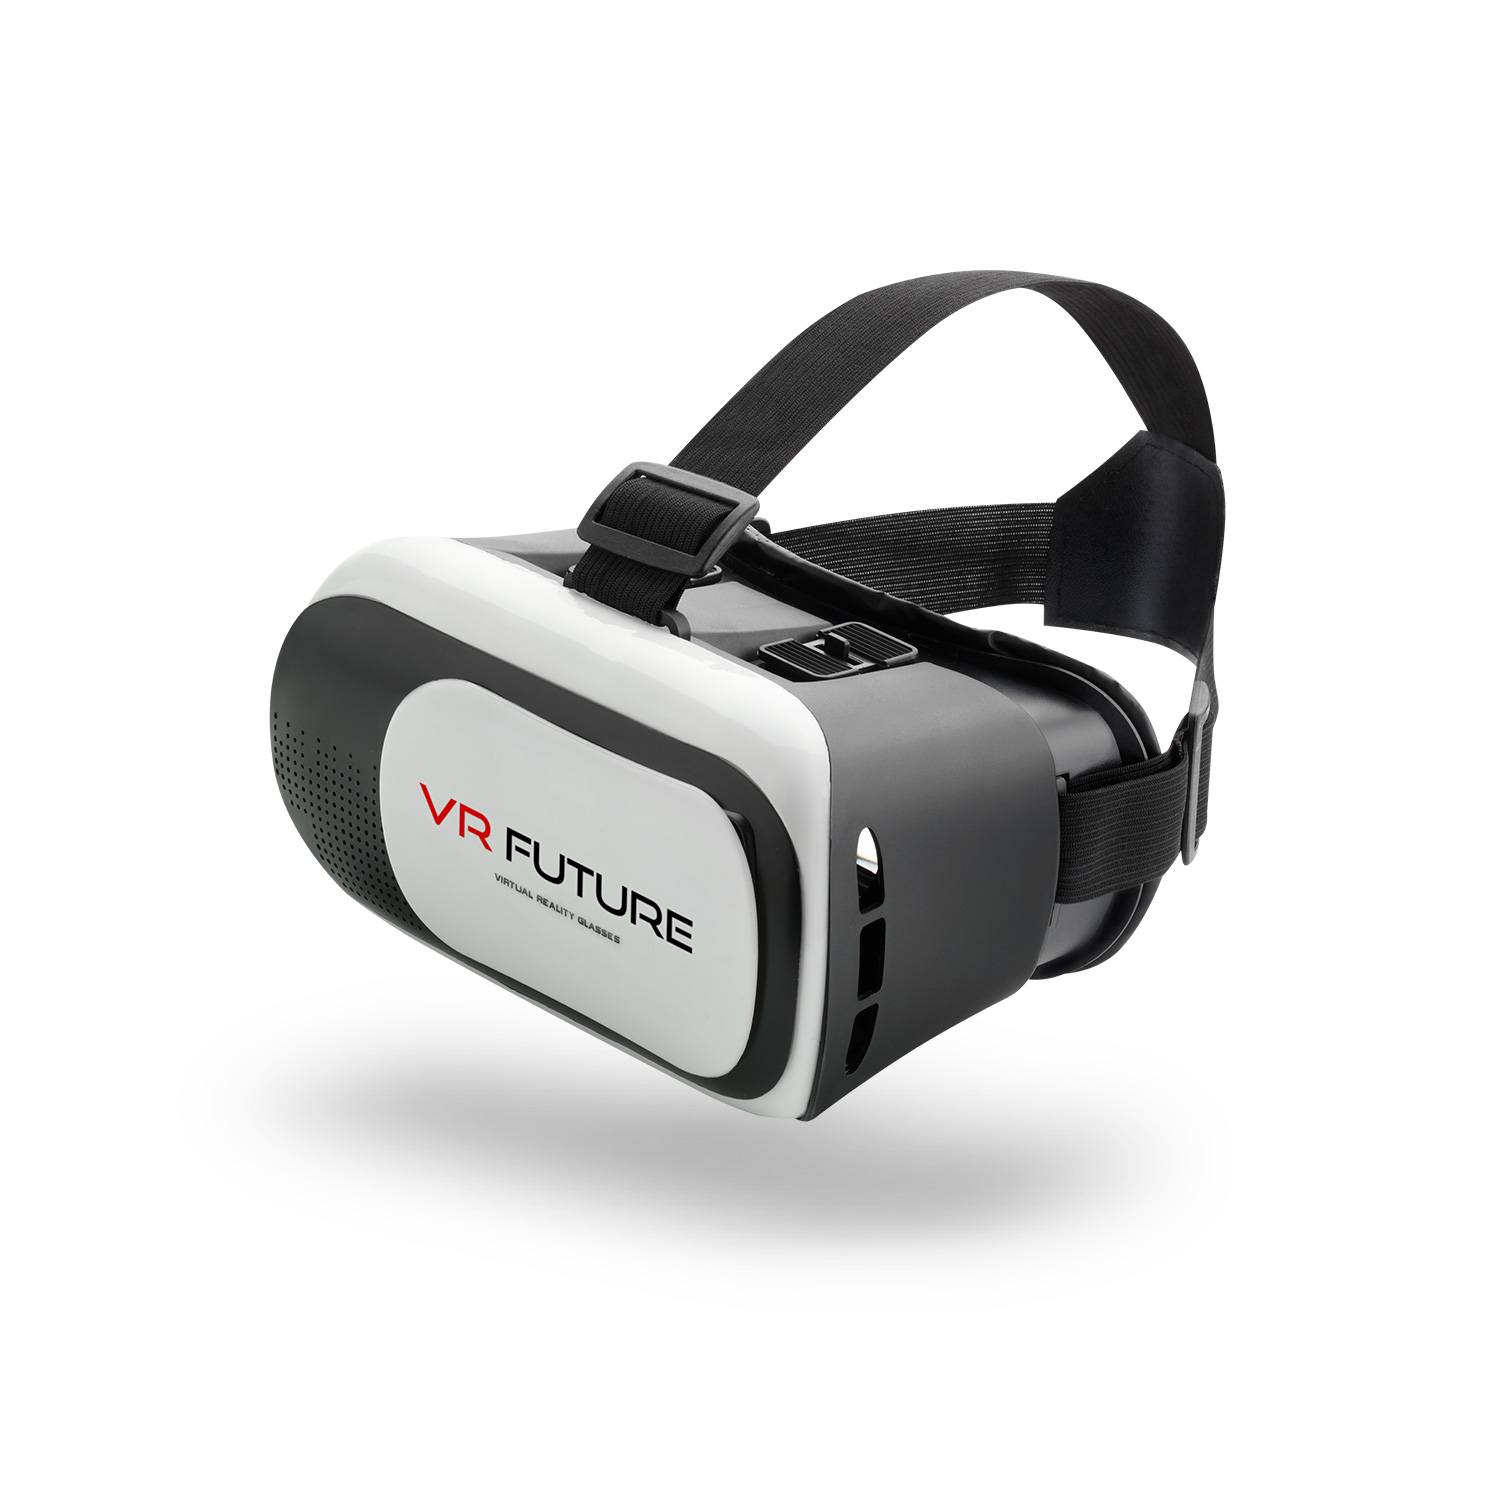 Gafas de realidad virtual ¿Cómo funcionan?